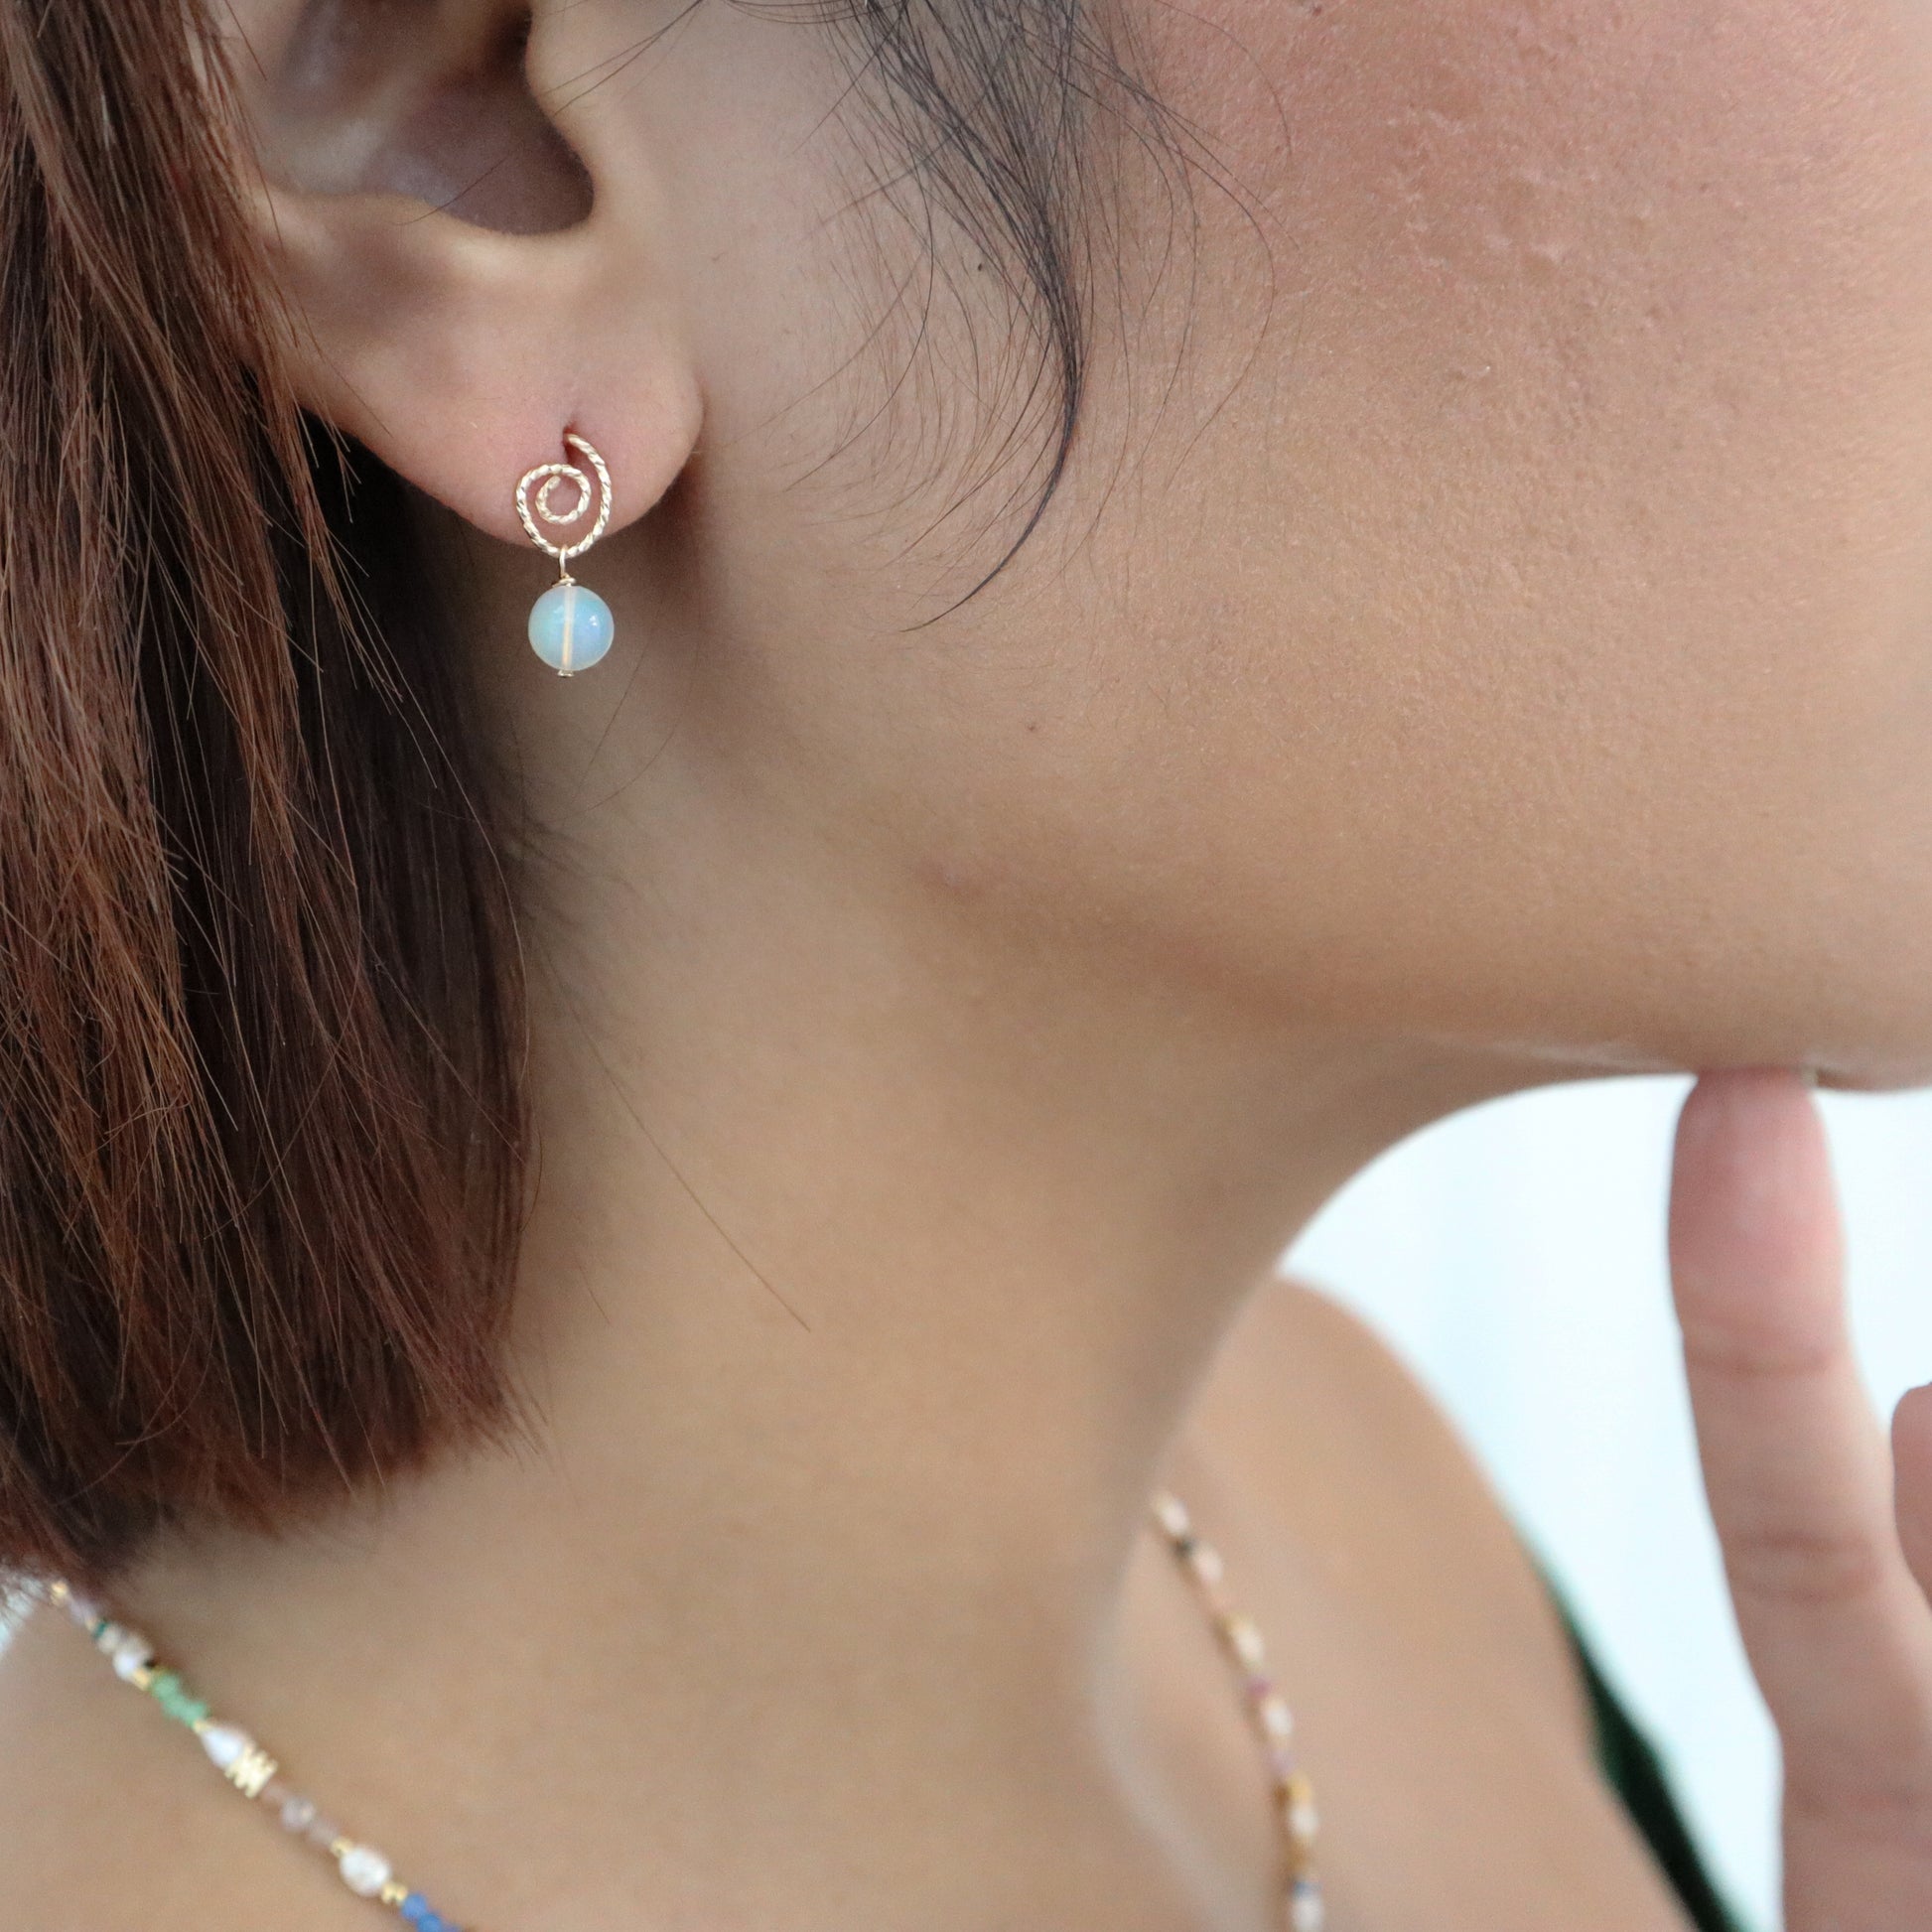 Roop Jewelry twinkle earrings in sparkly swirly opal. Handmade jewelry in Oakland, Ca.